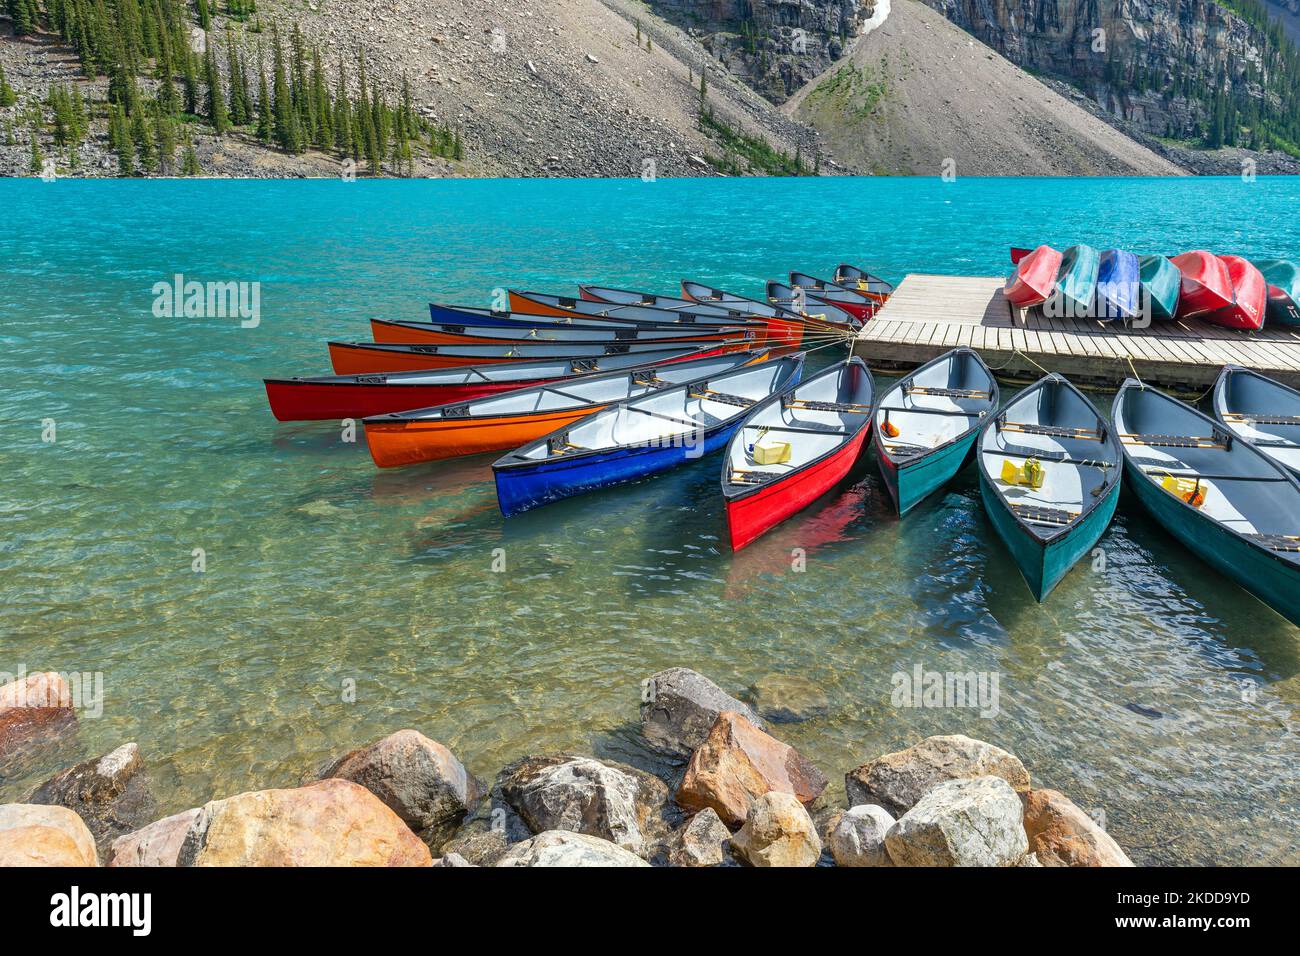 Kayaks à louer, lac Moraine, parc national Banff, Alberta, Canada. Banque D'Images